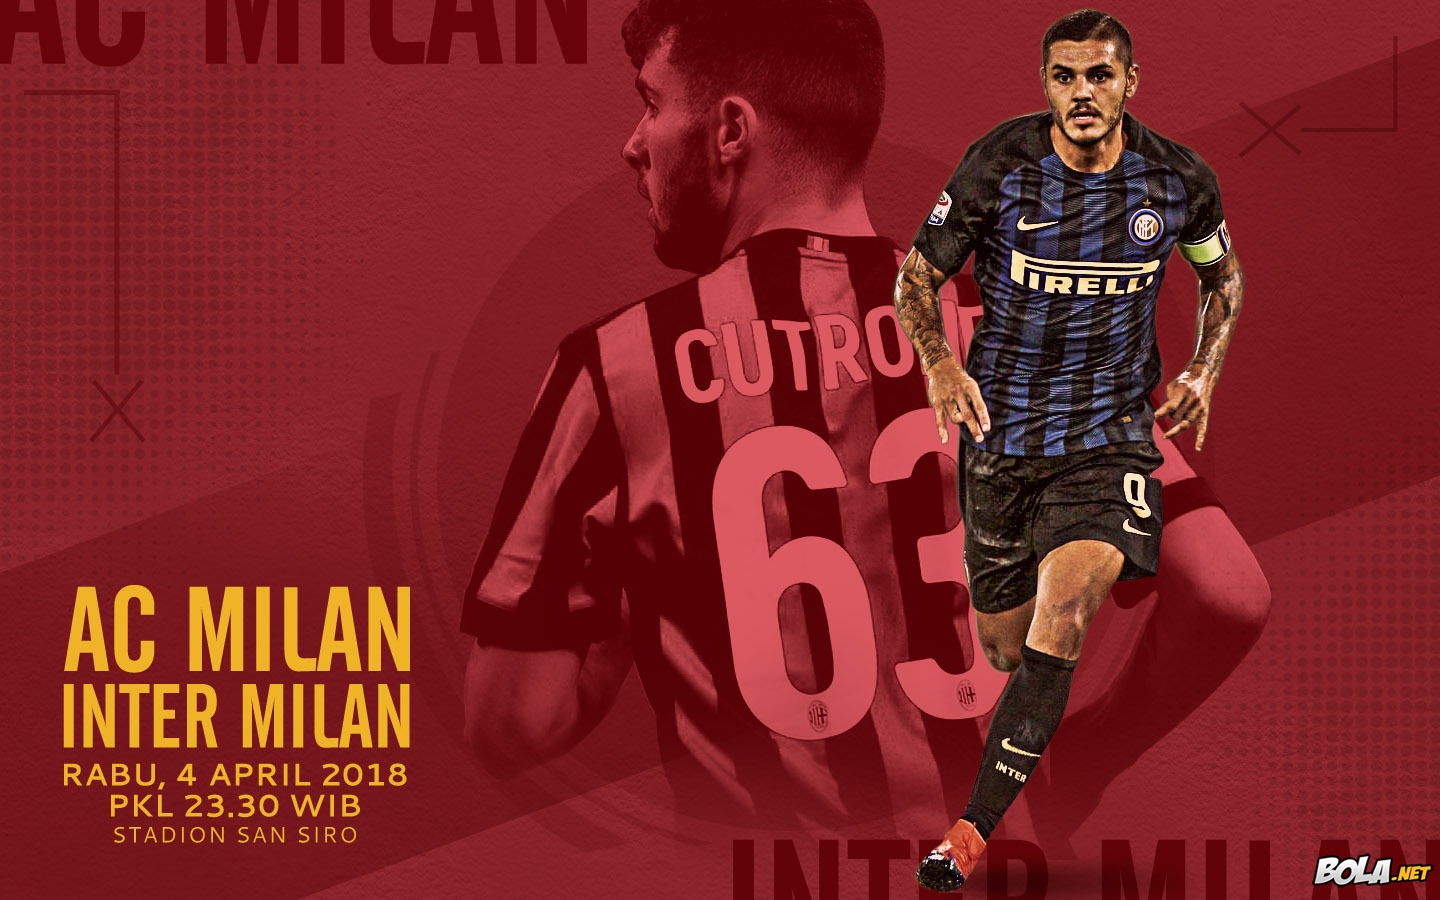 Deskripsi : Wallpaper Ac Milan Vs Inter Milan, size: 1440x900